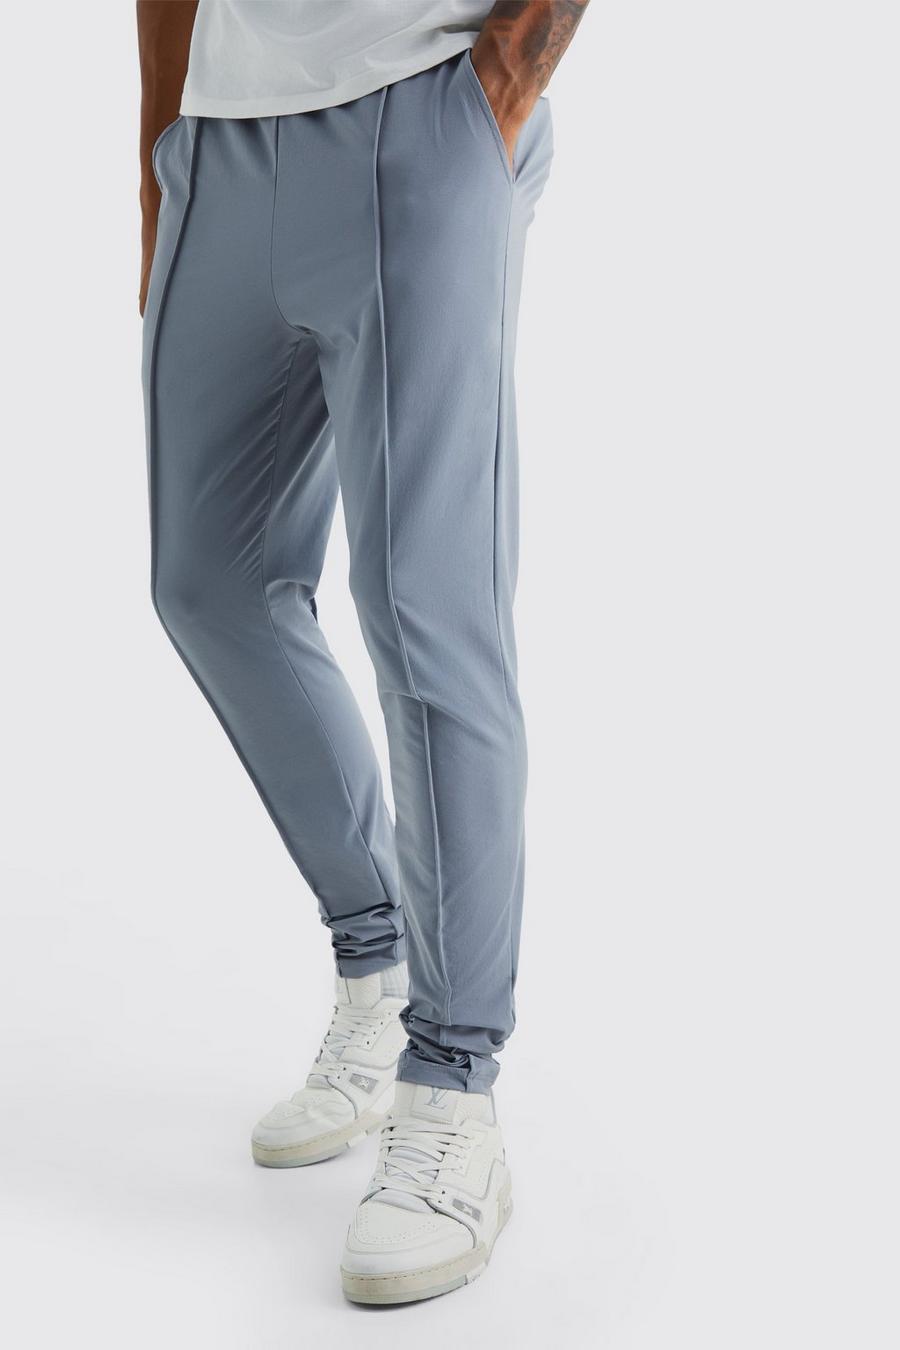 Pantalón Tall pitillo elástico ligero con alforza, Light grey gris